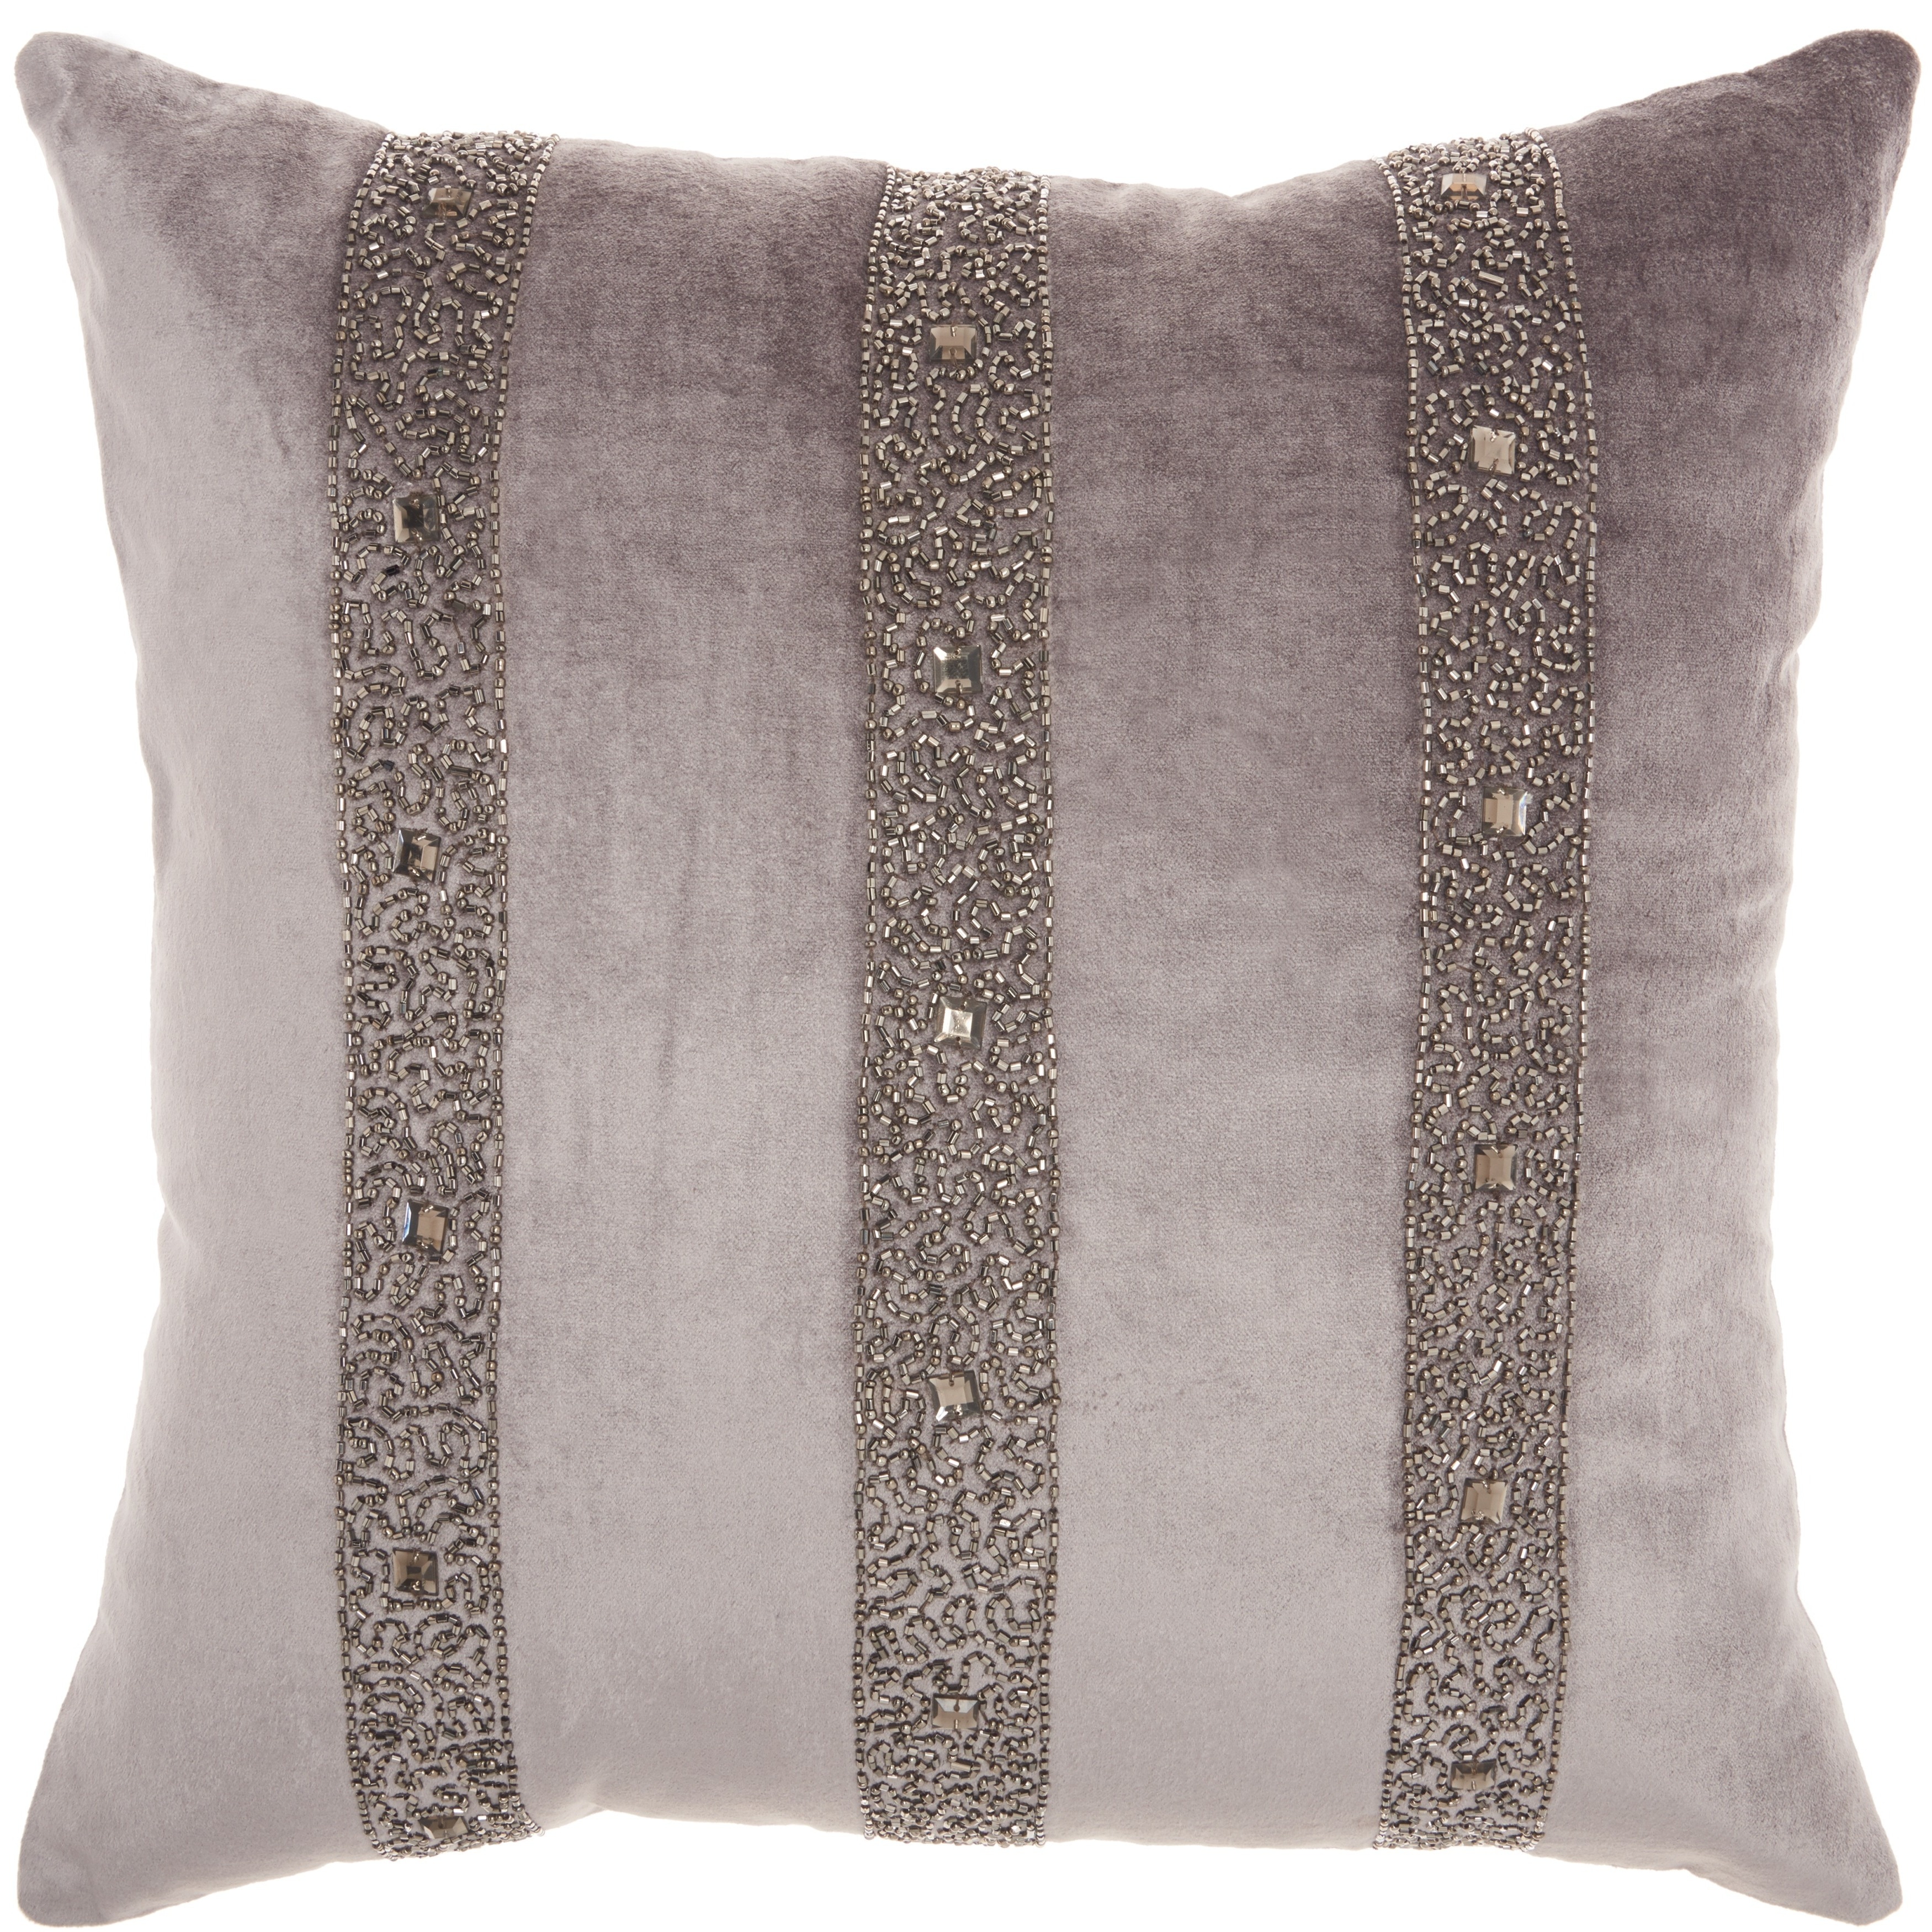 Shop Inspire Me Home Decor Beaded Stripes Dark Grey Throw Pillow